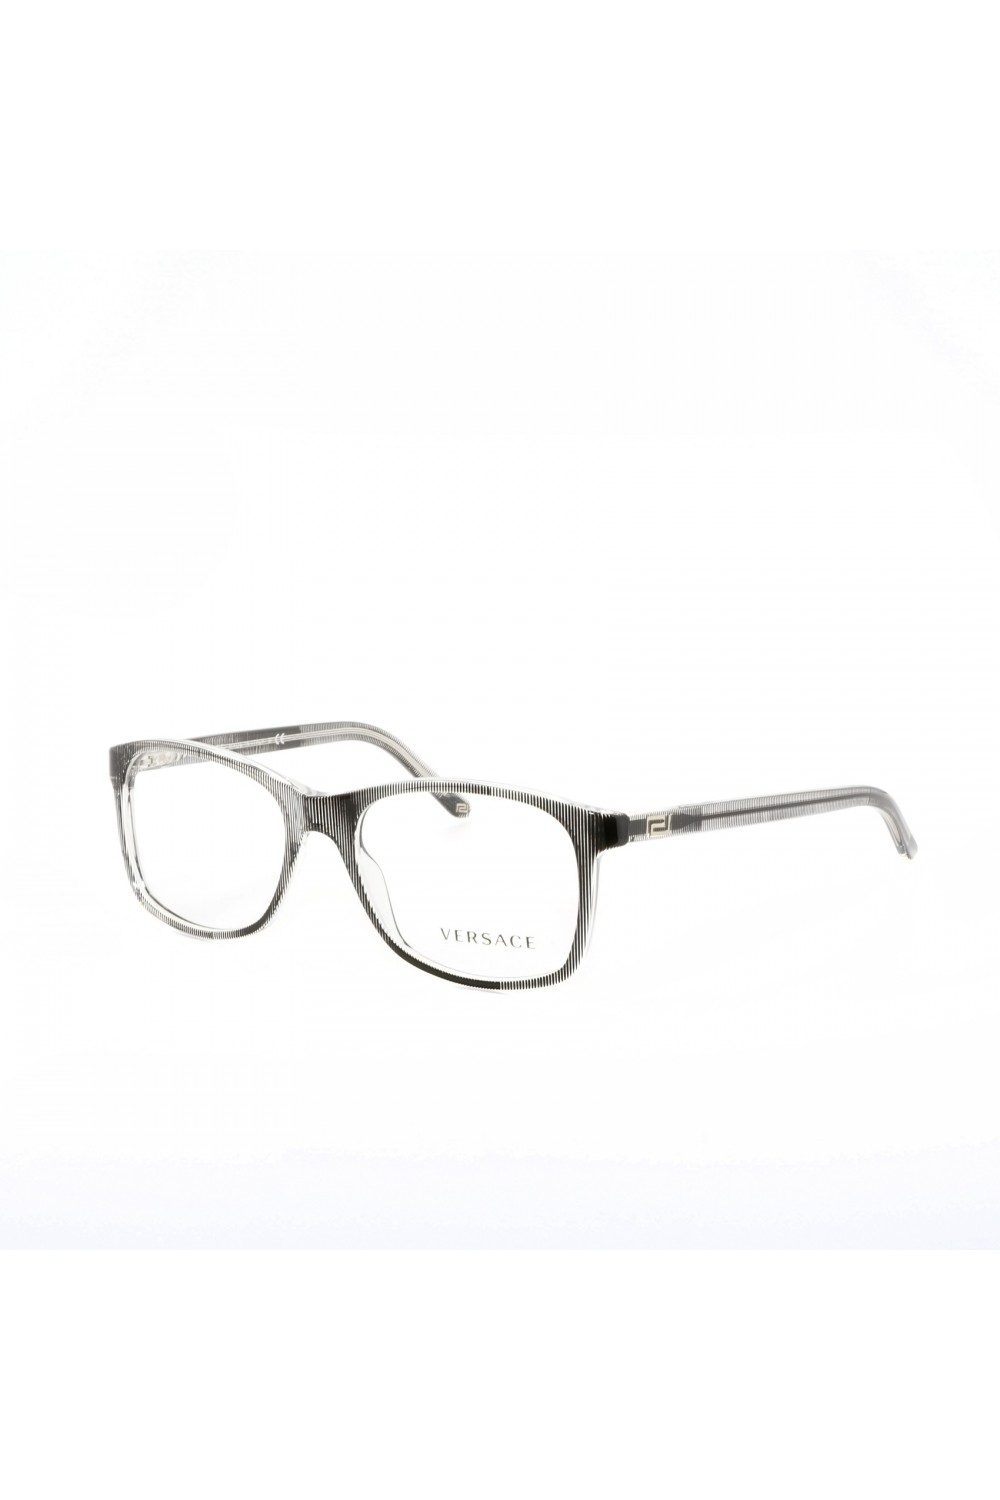 Versace - Occhiali da vista in celluloide squadrati per uomo nero - 3155 933